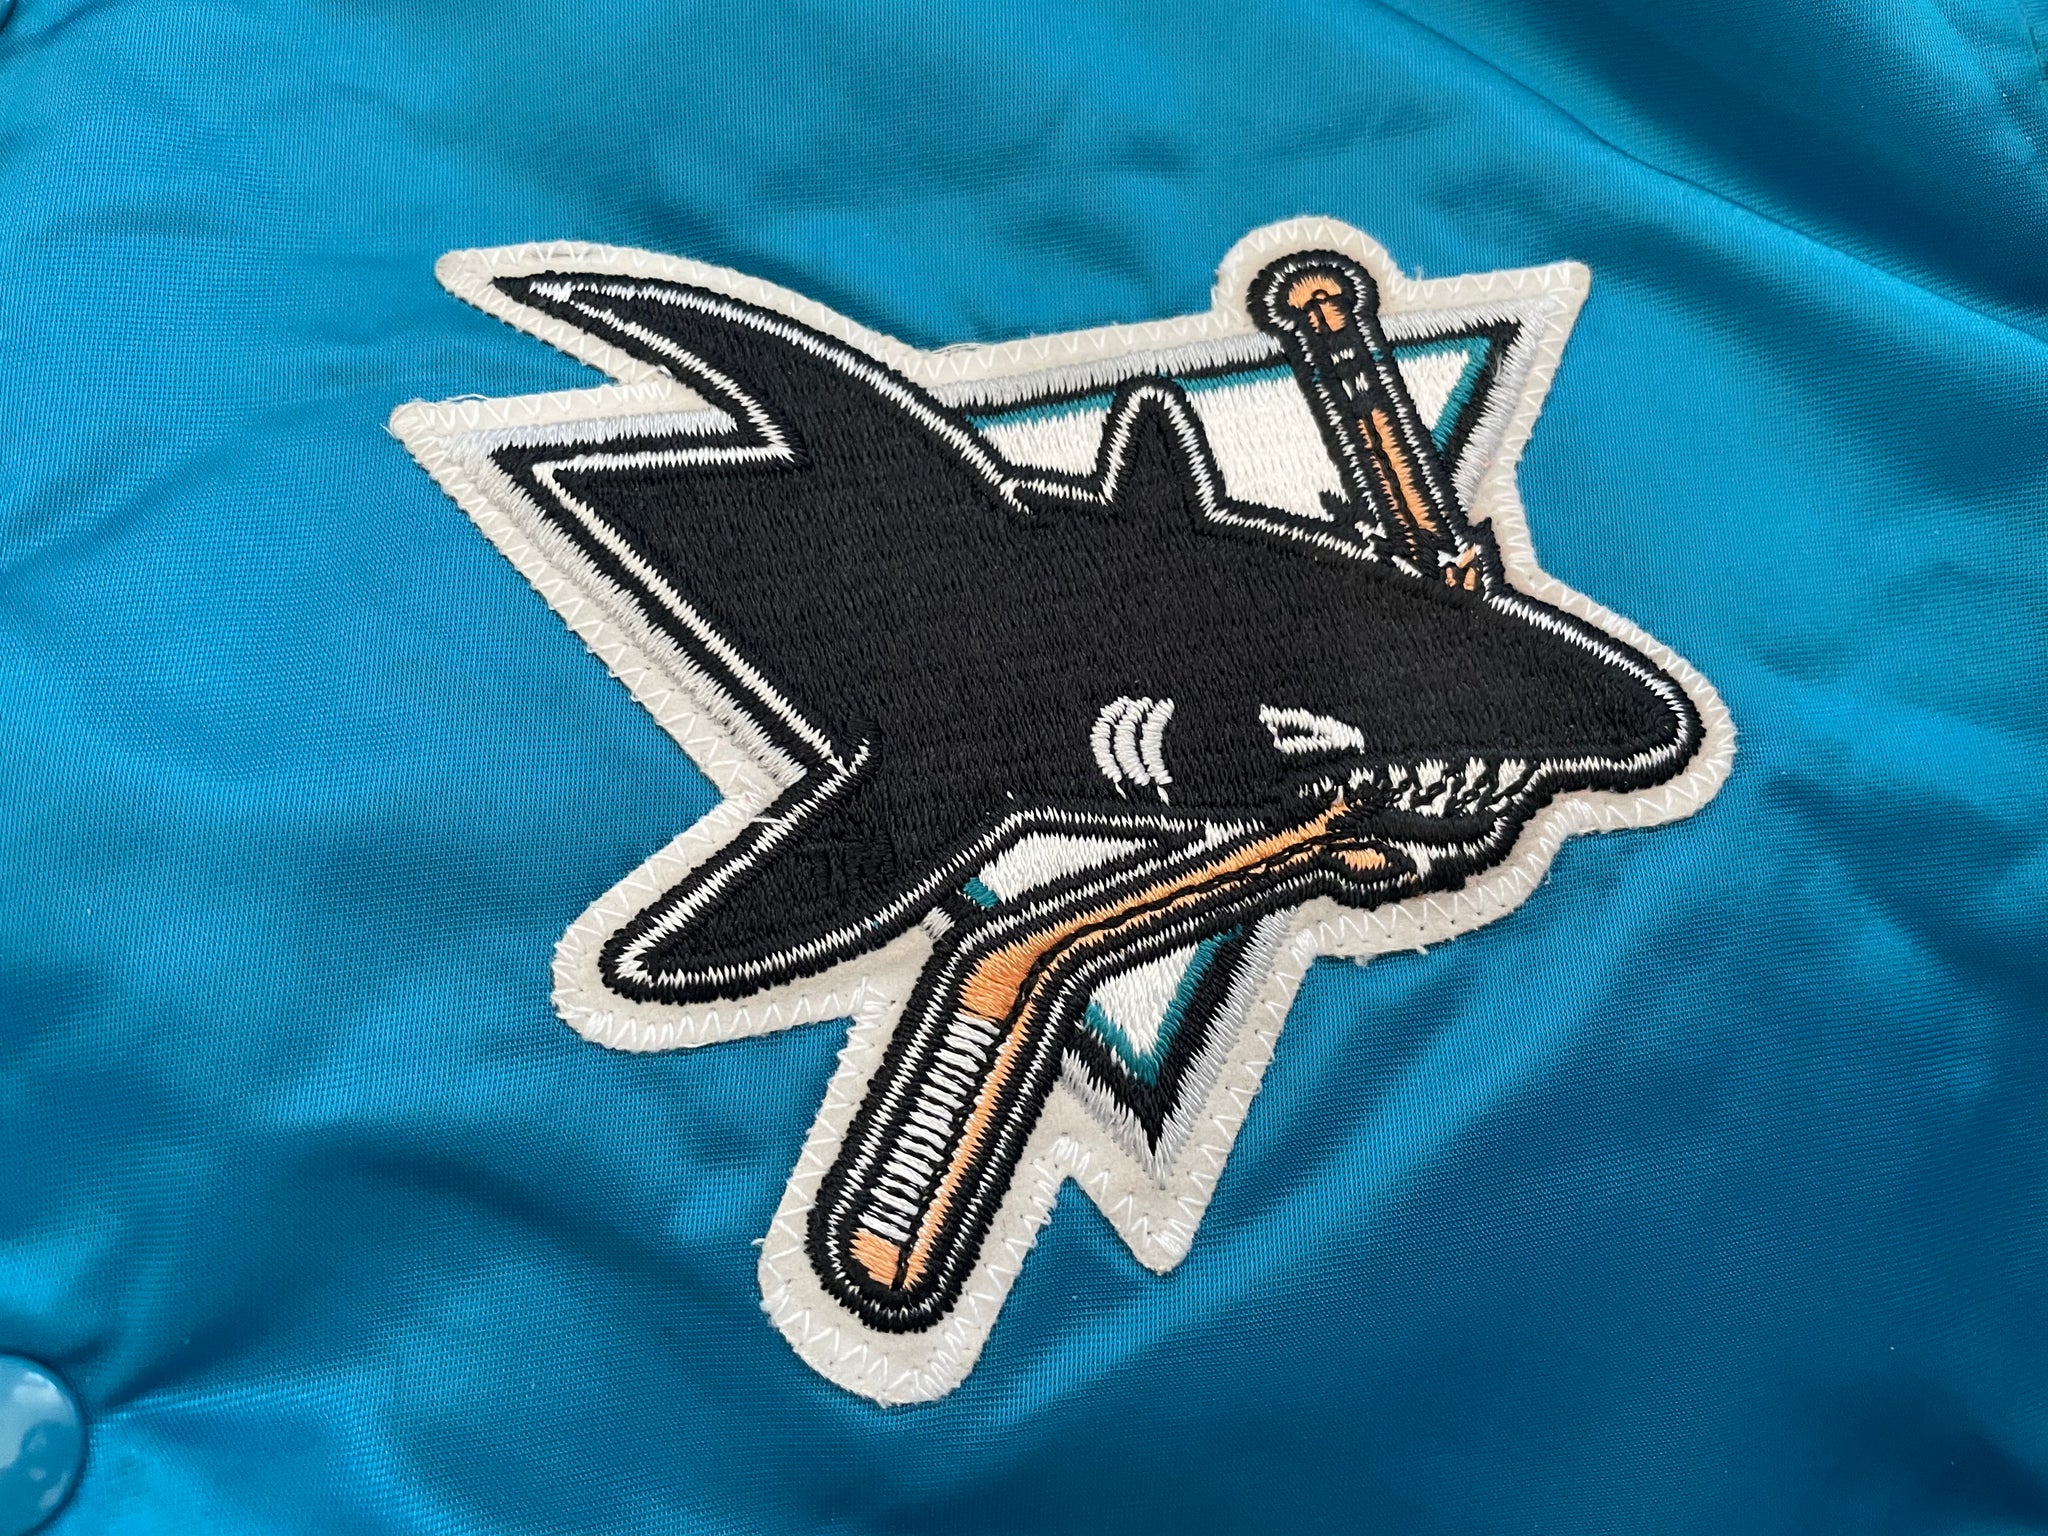 Vintage 90s San Jose Sharks Starter Jacket